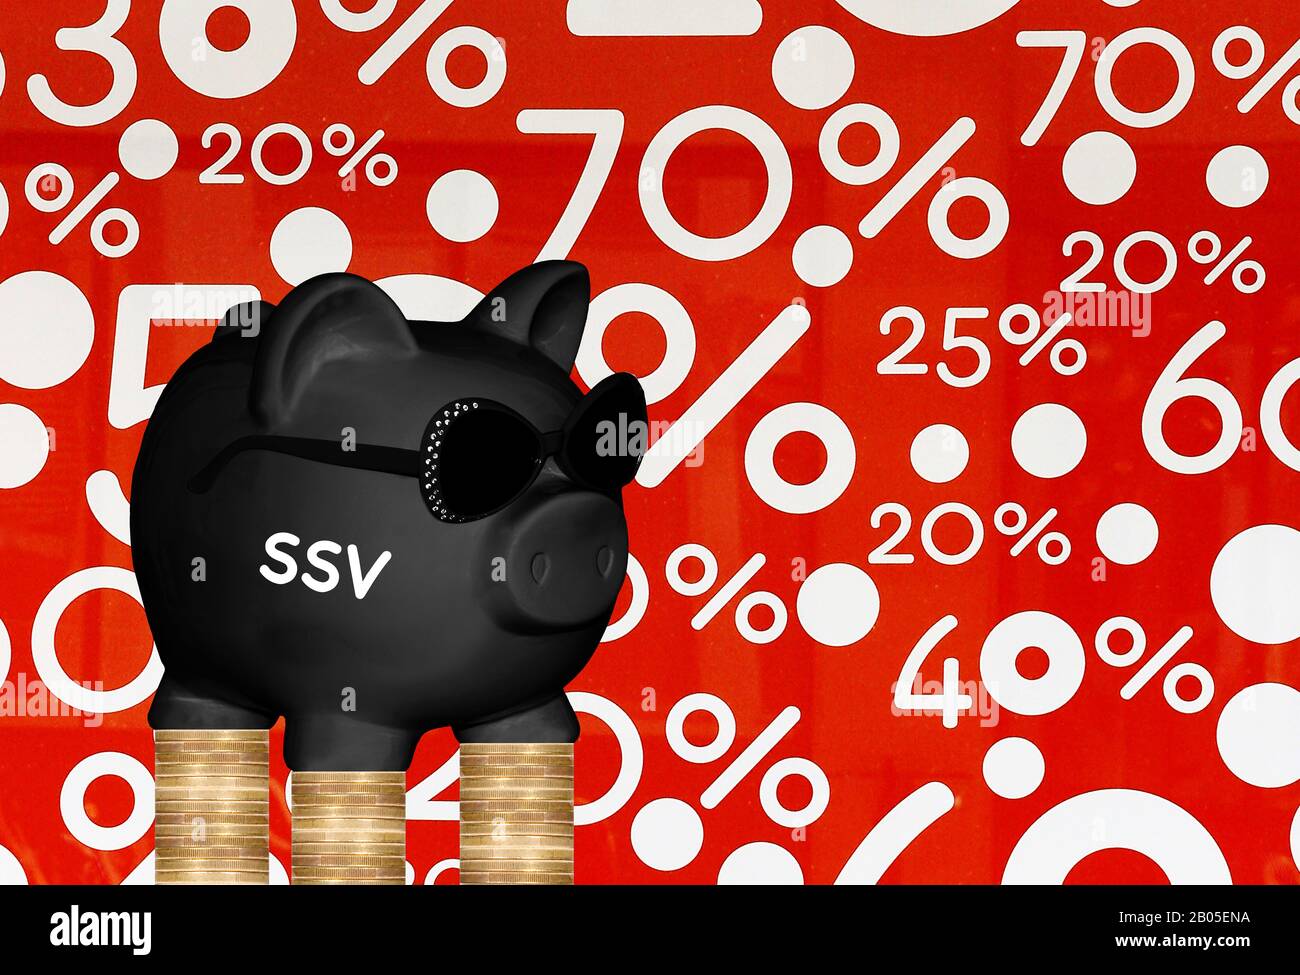 Schwarze Schweinebank mit Sonnenbrille und Schriftzug SSV, Sonderangebote und Münzstapel im Hintergrund, Komposition Stockfoto